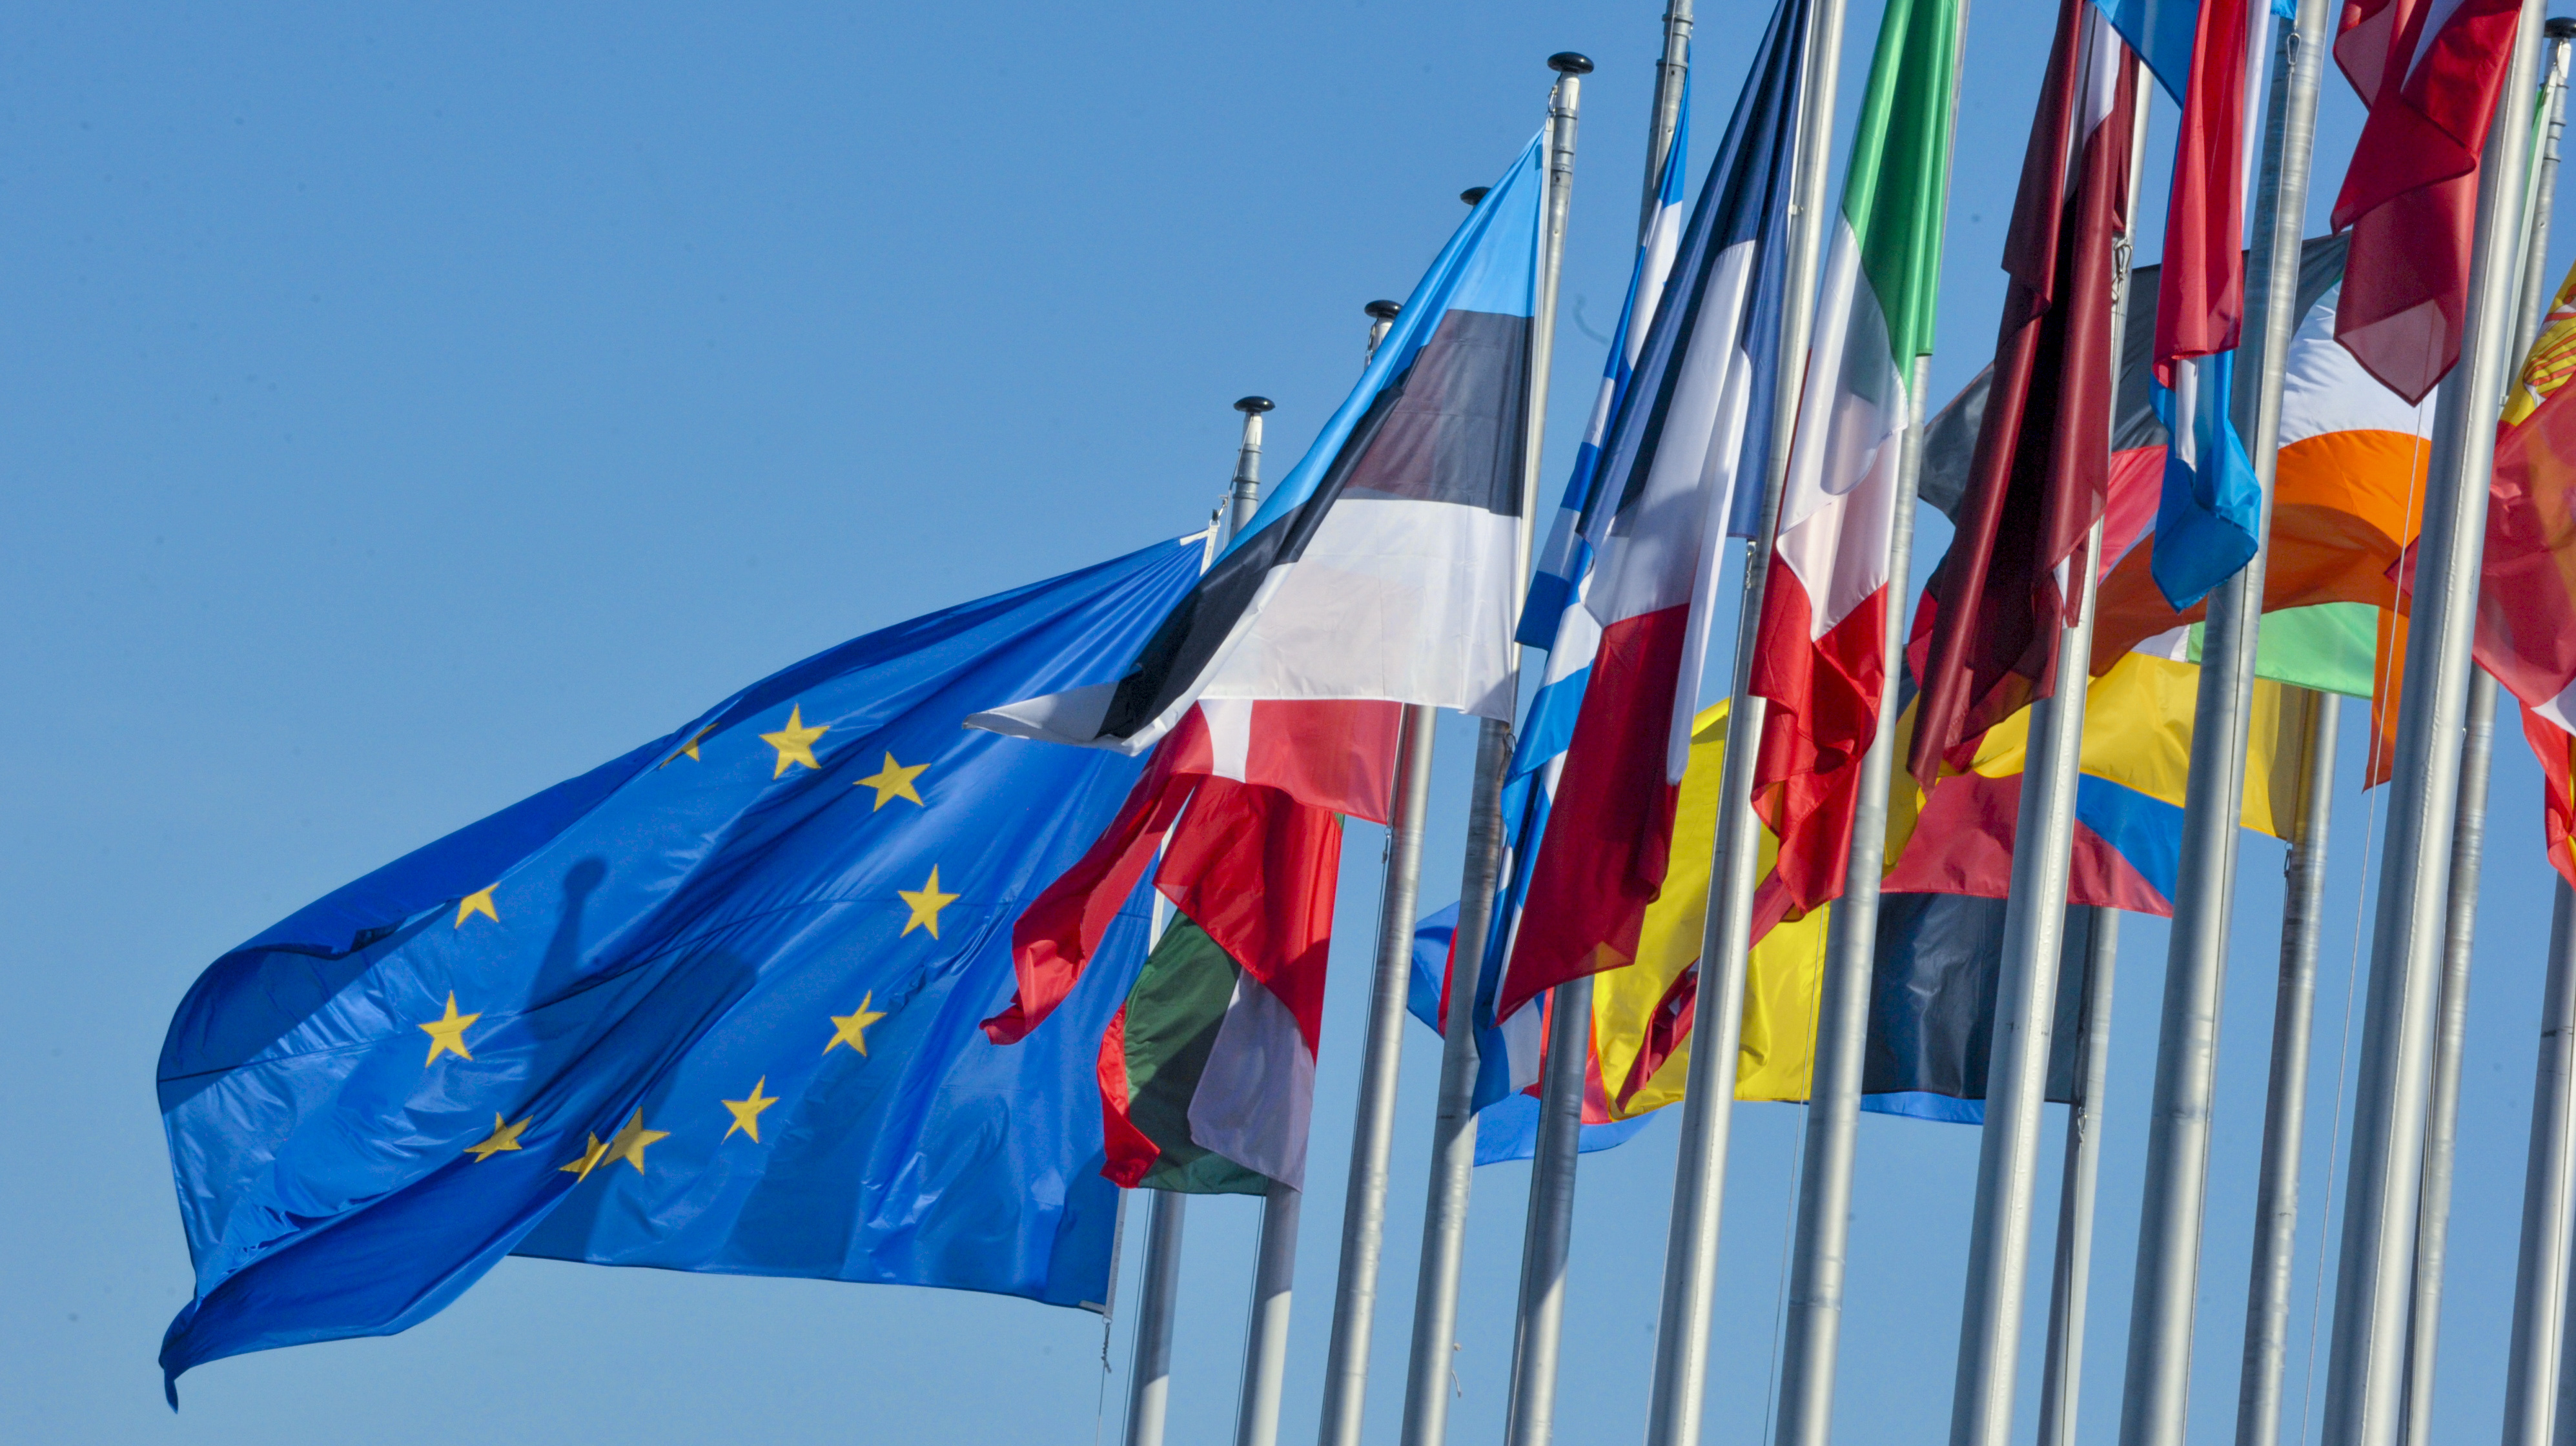 Neuf membres de l’UE exigent des changements dans les décisions en matière de politique étrangère et de défense